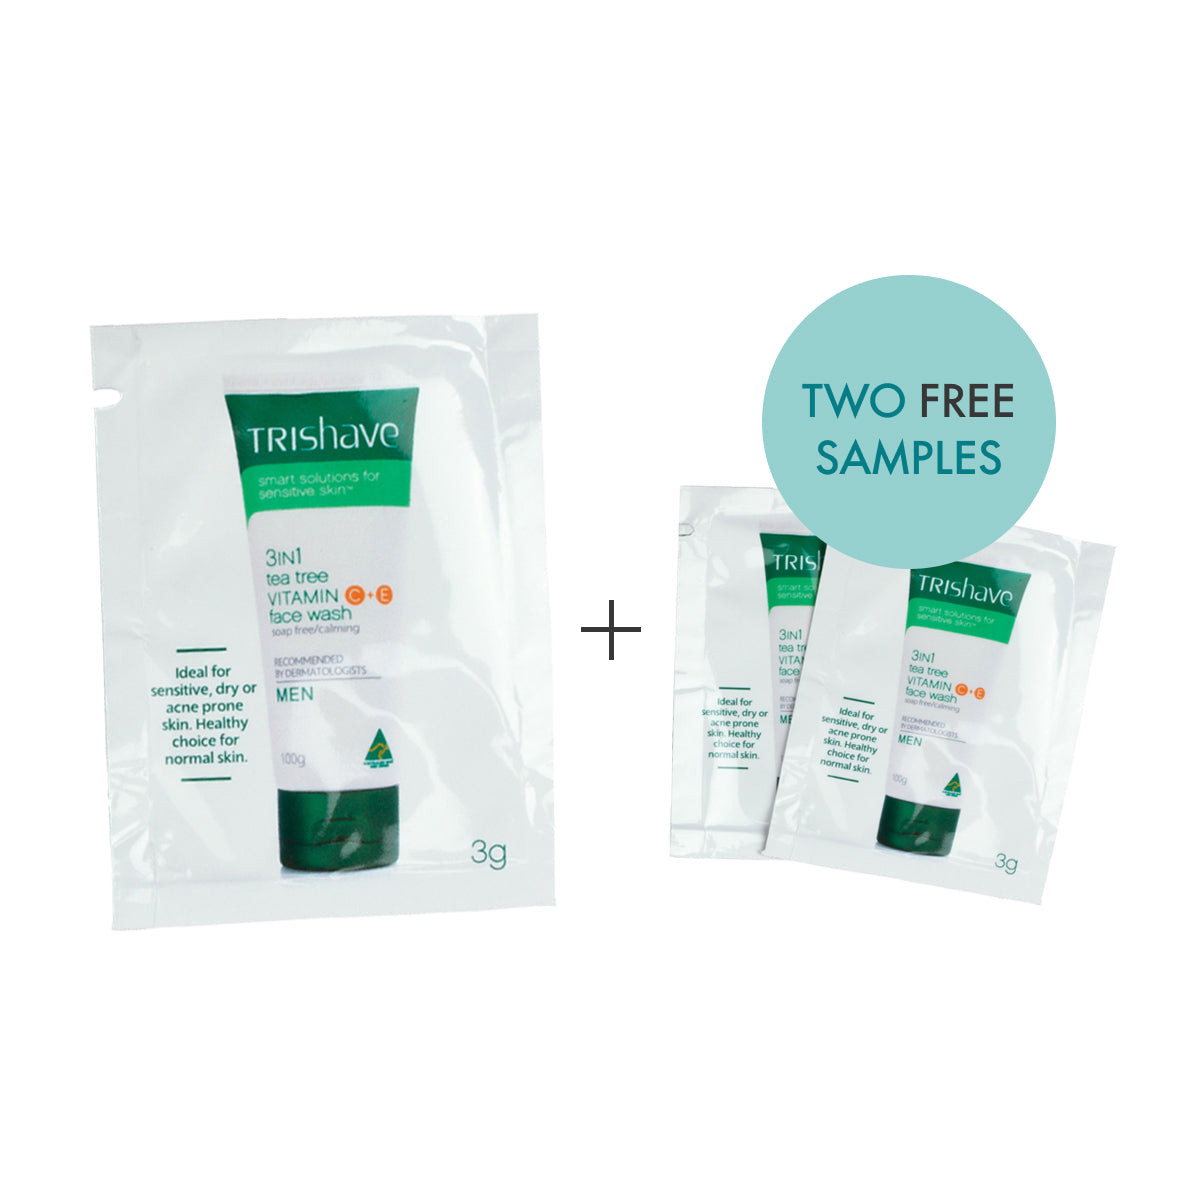 Sample Size: TriShave 3in1 Tea Tree Vitamin C+E Face Wash - Men 3g